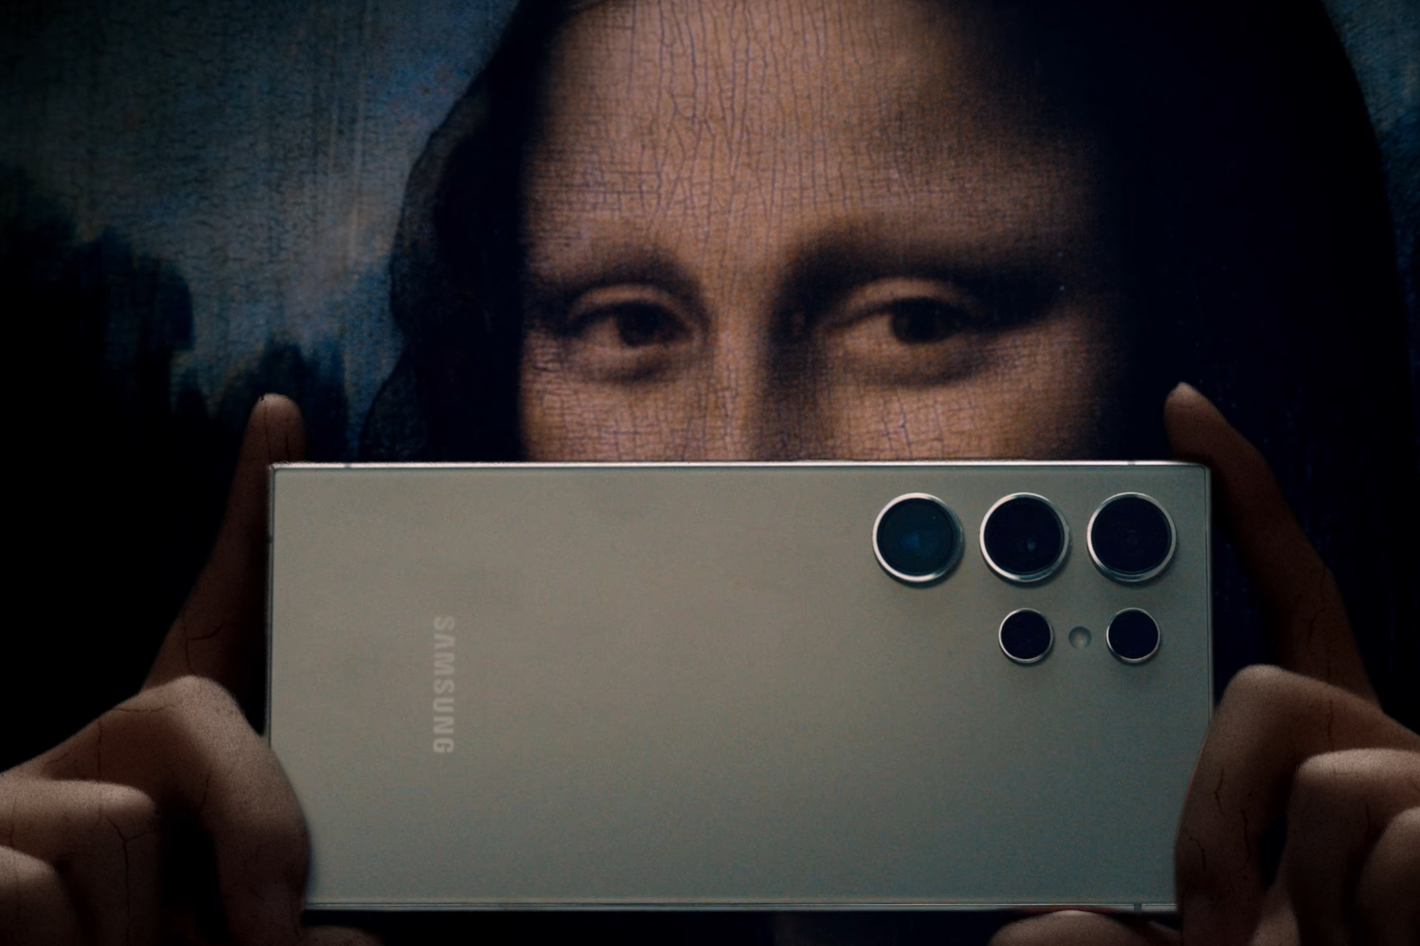 La nueva lente Samsung S24 Ultra 5x hace 10x… ¡con un recorte!